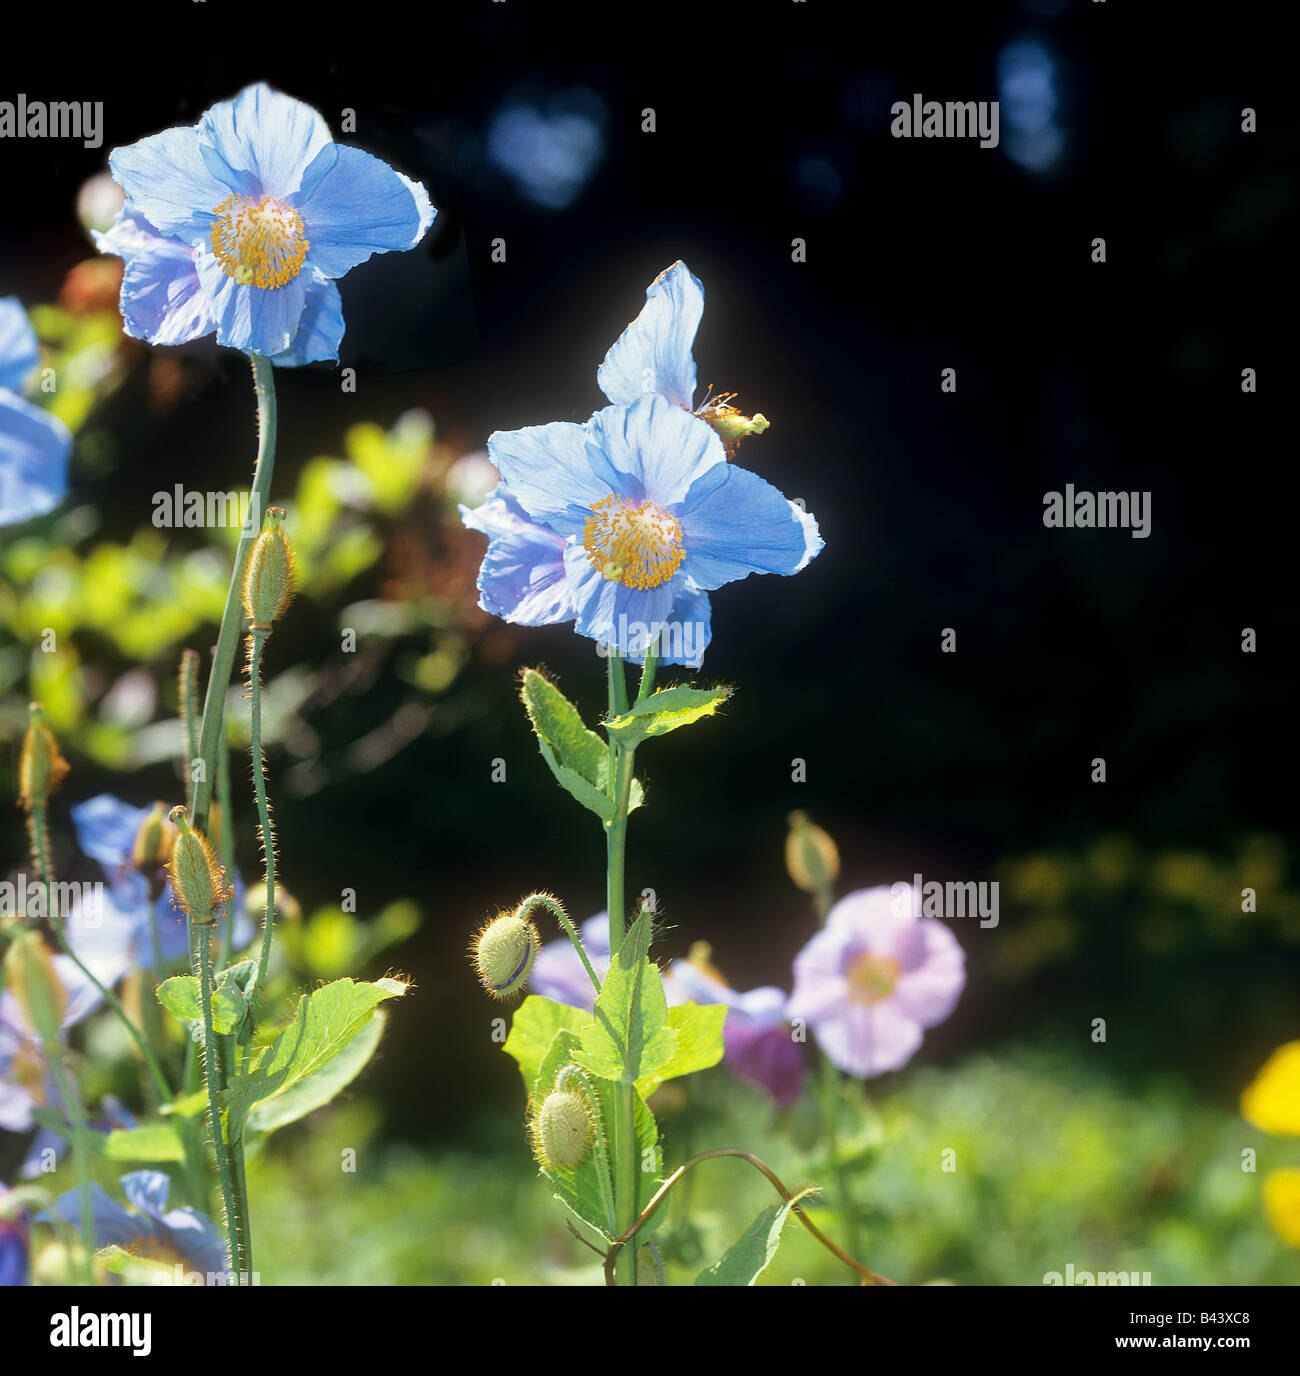 blue poppy / Meconopsis grandis Stock Photo